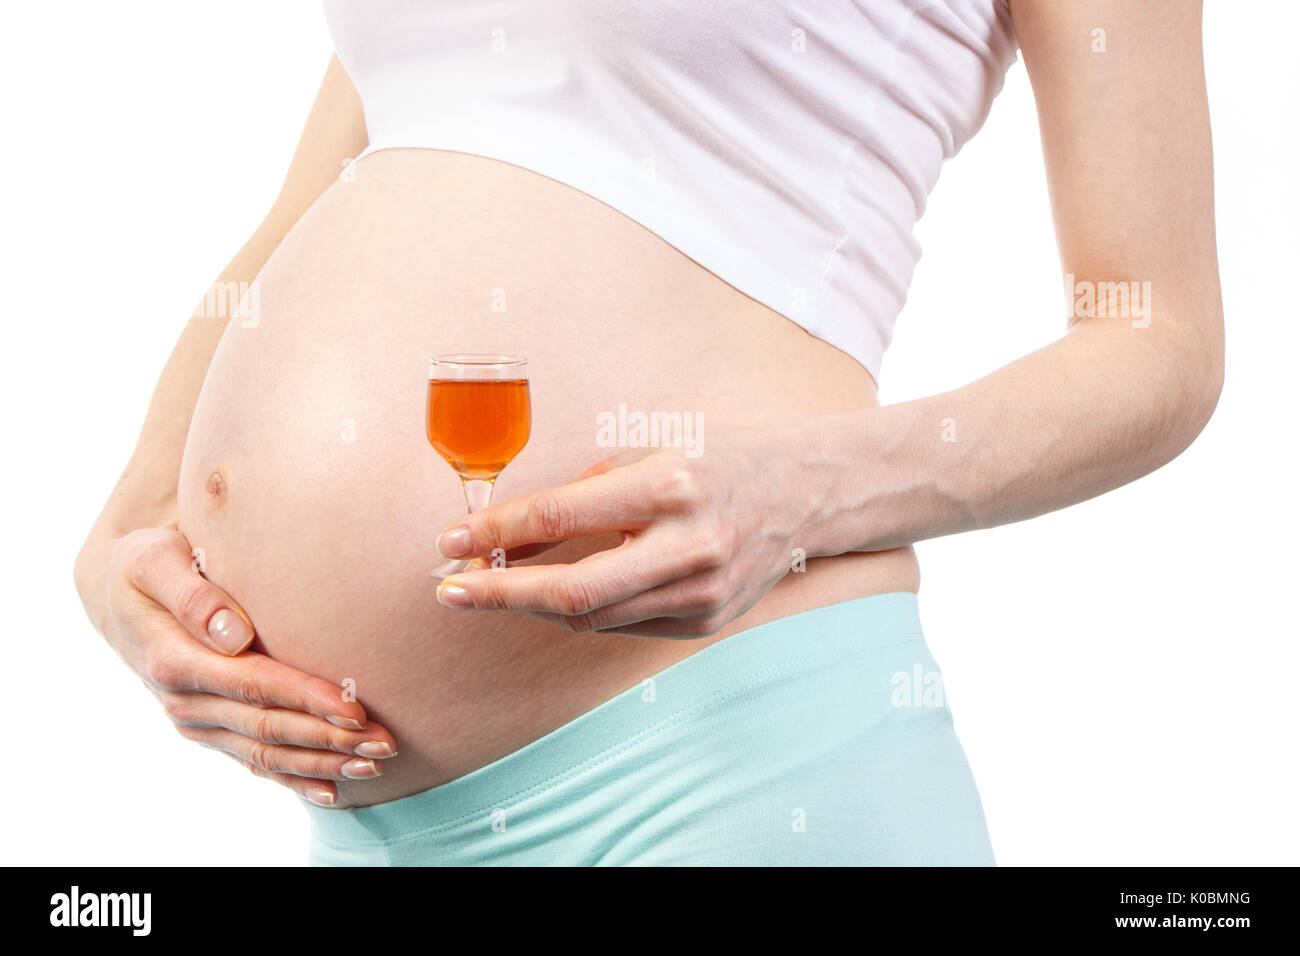 Donna in gravidanza con bicchiere di vino, il concetto di stili di vita insalubri durante la gravidanza e la maternità Foto Stock